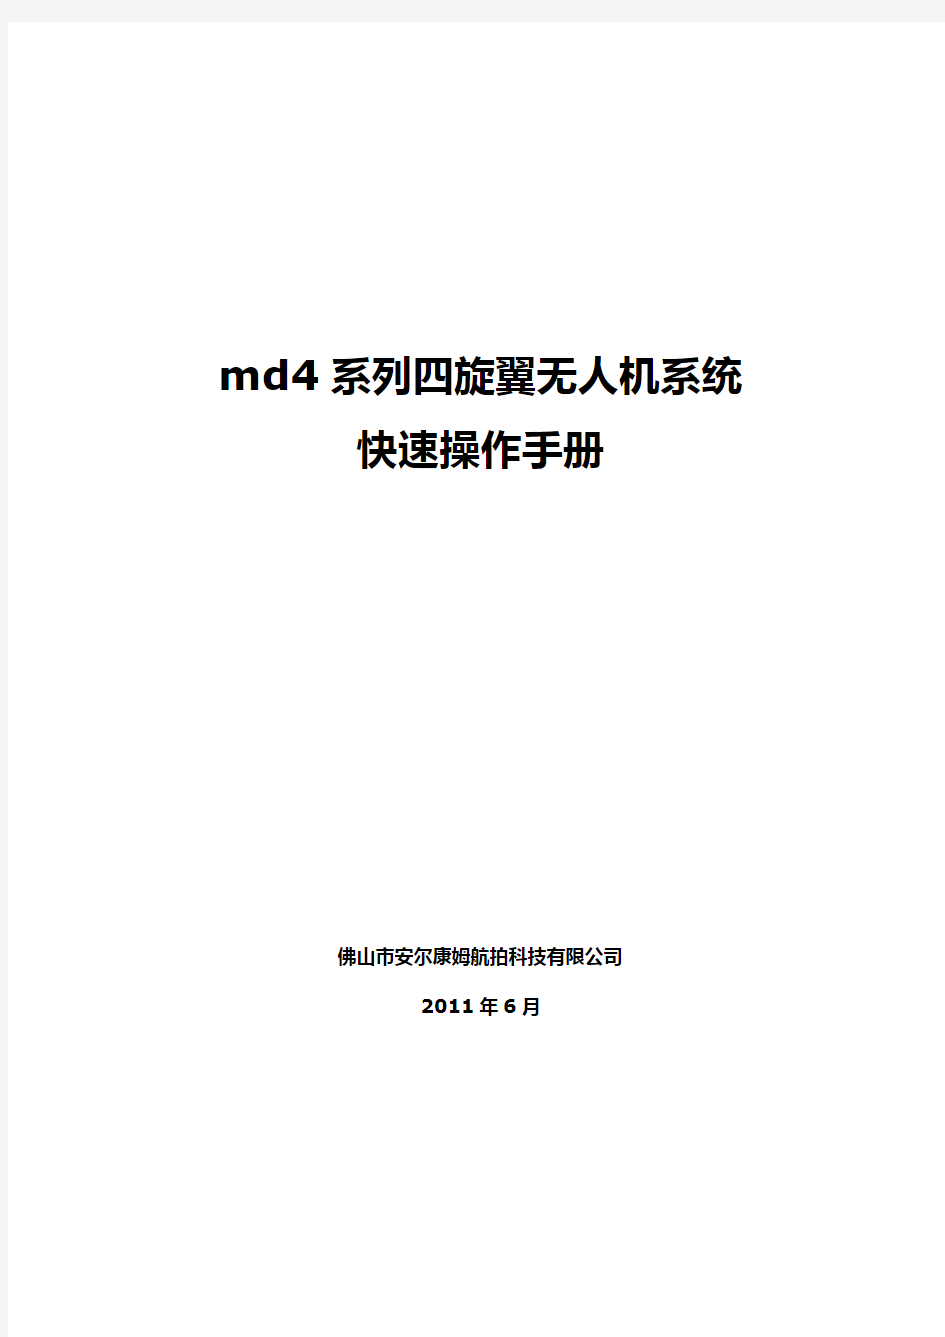 md4系列四旋翼无人机系统快速操作手册